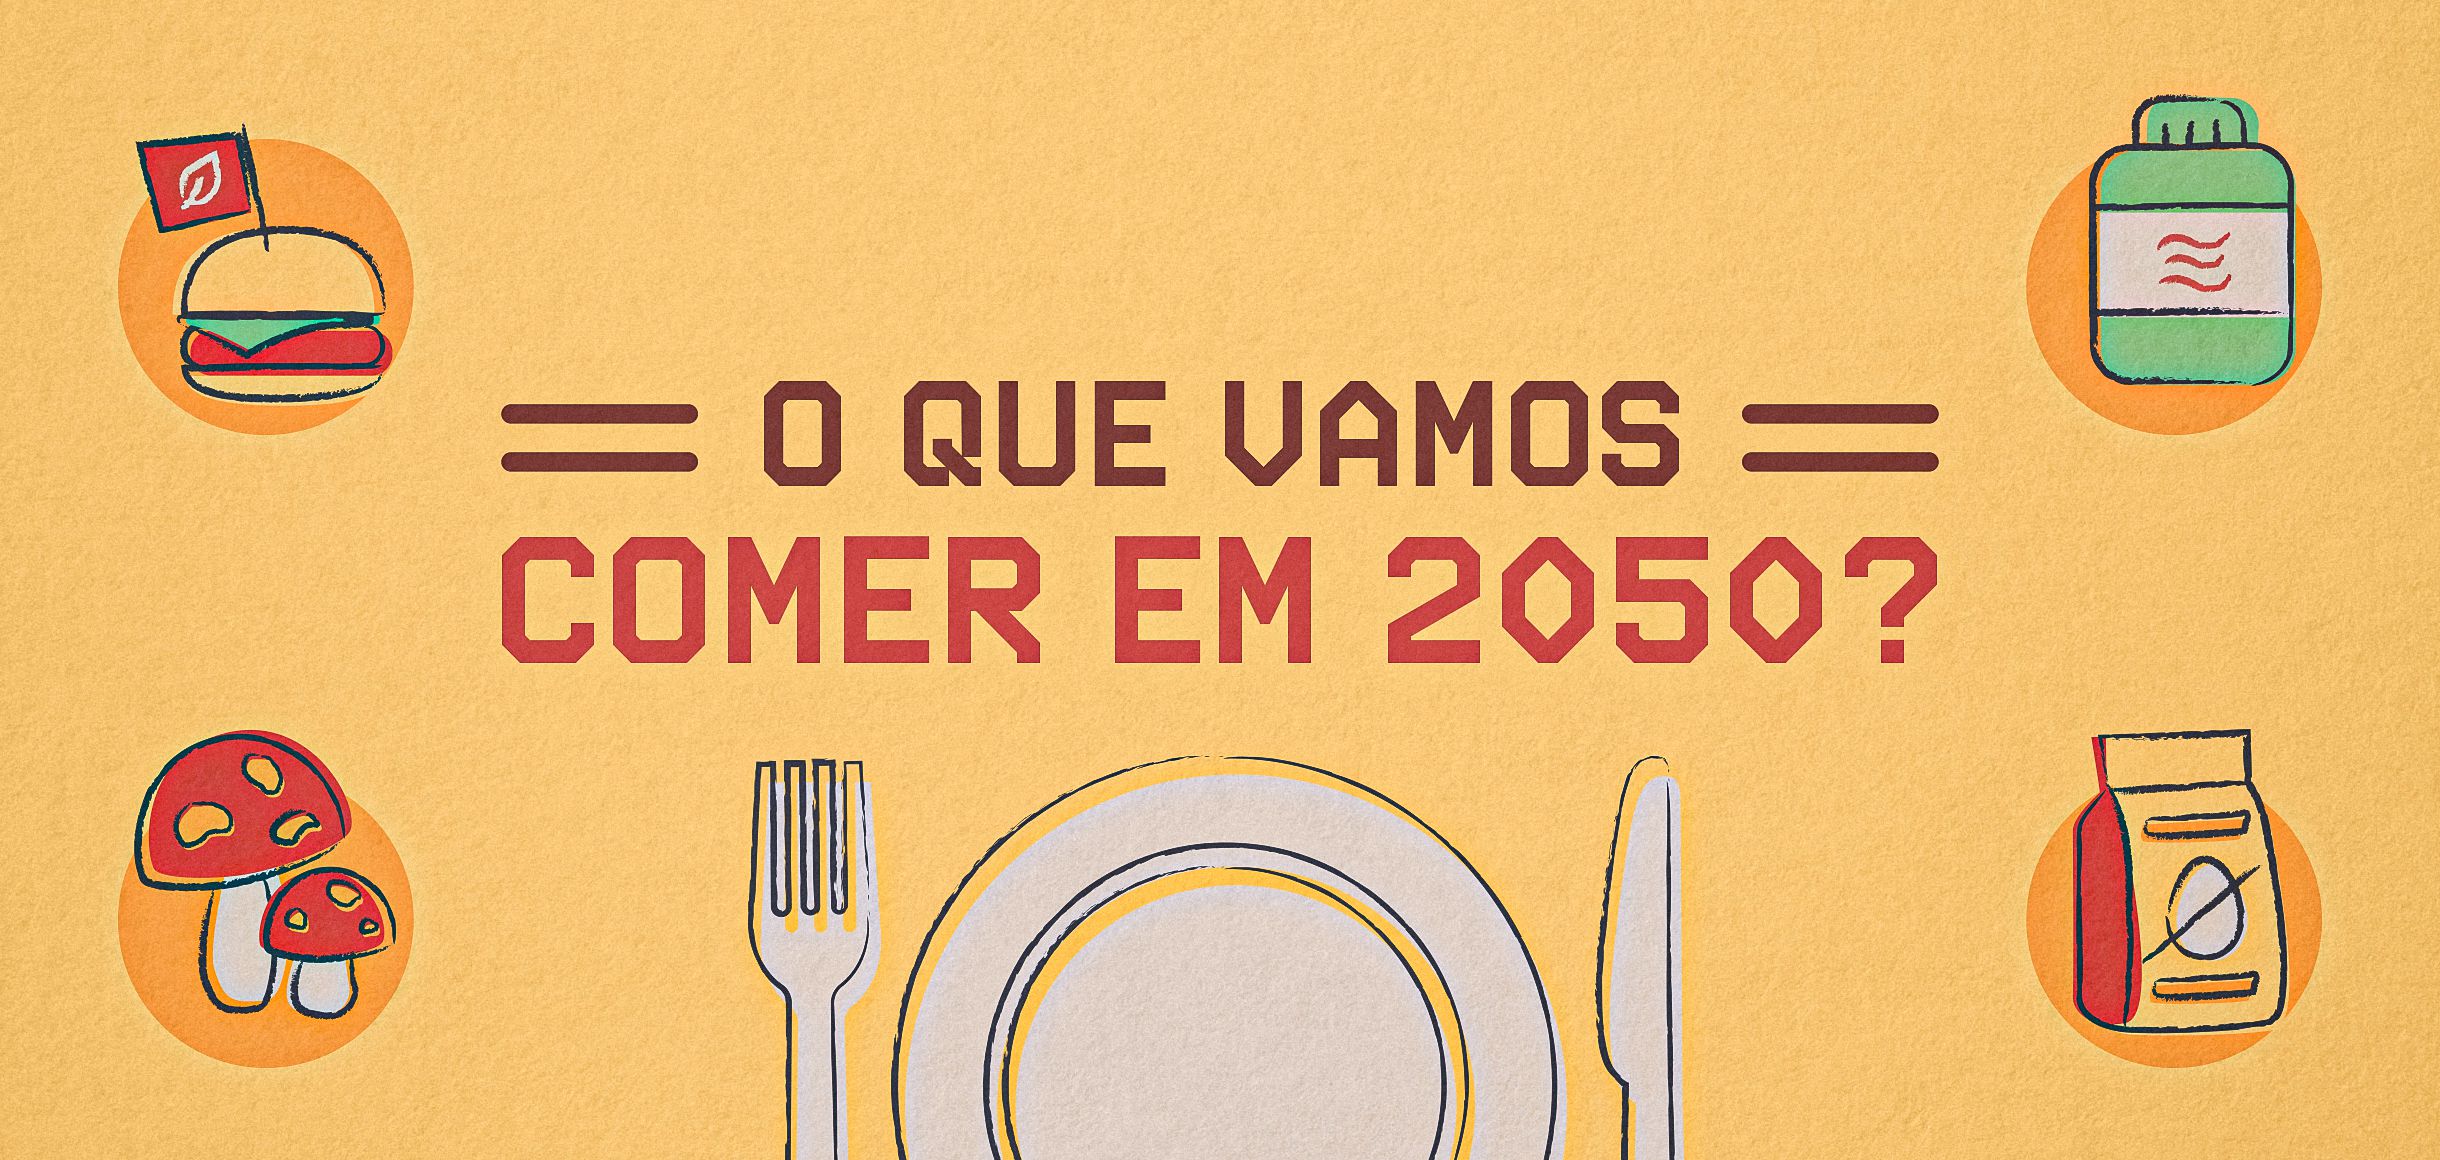 O que vamos comer em 2050?